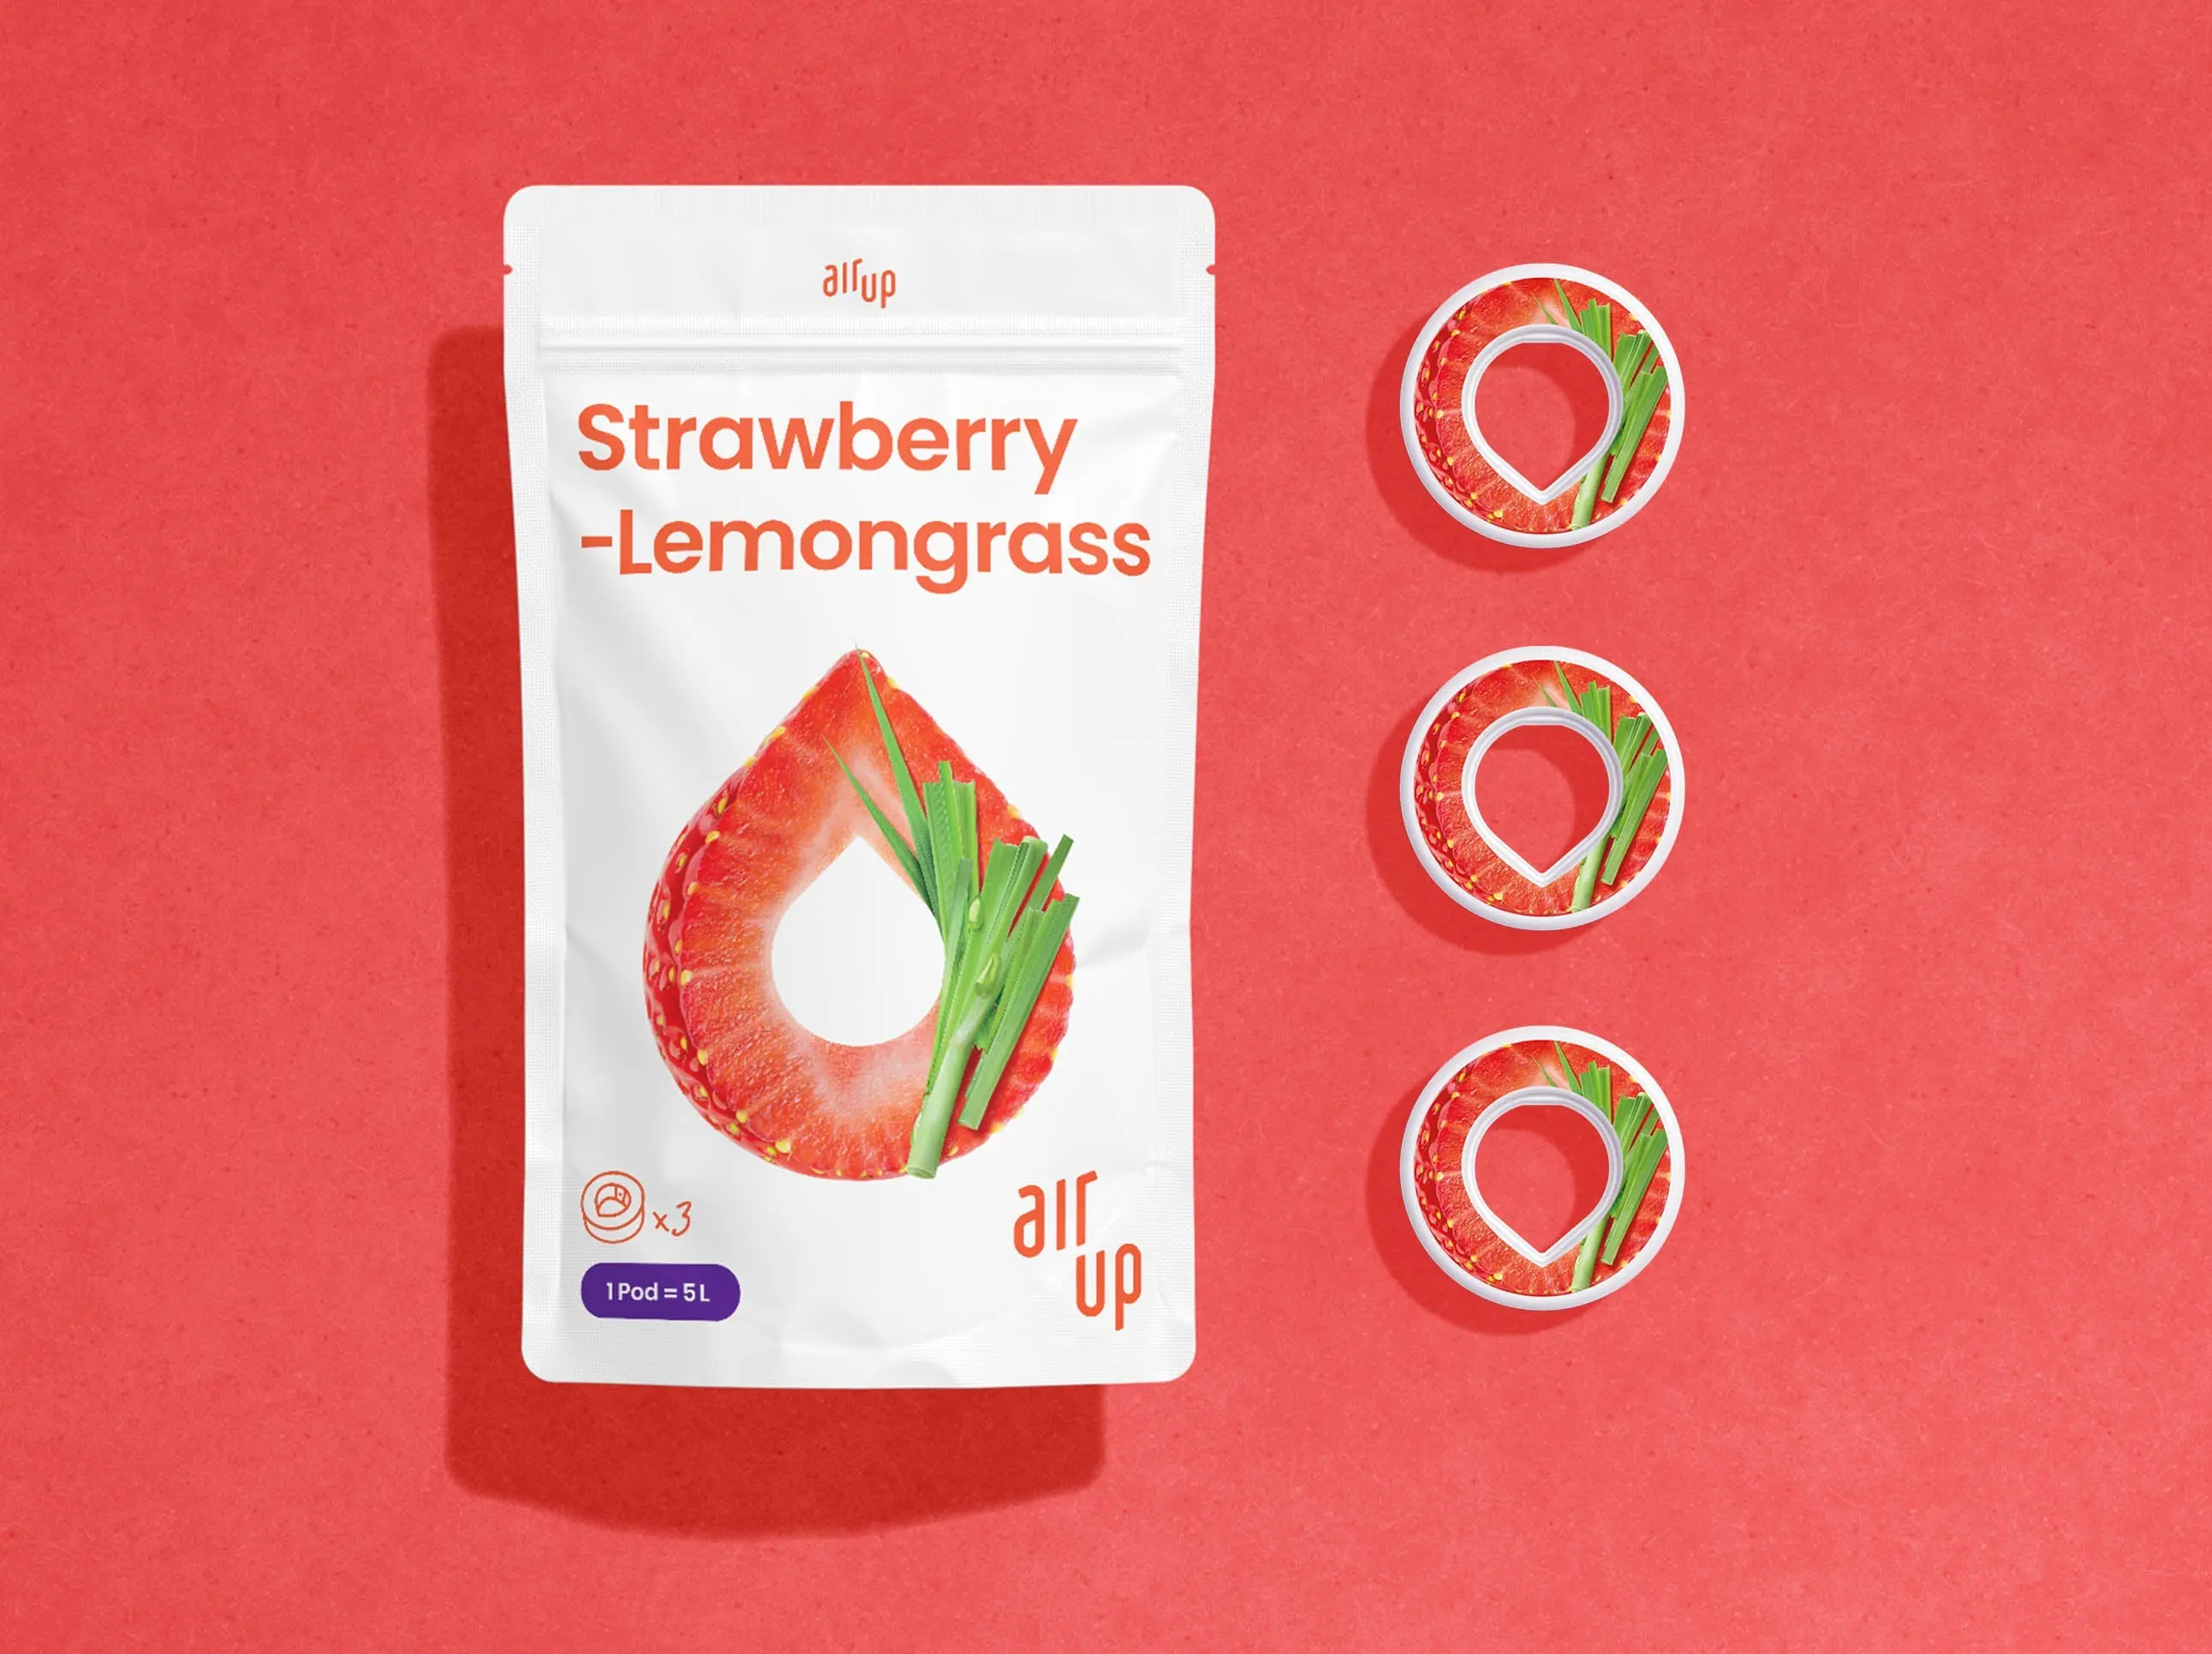 Strawberry-Lemongrass Pods